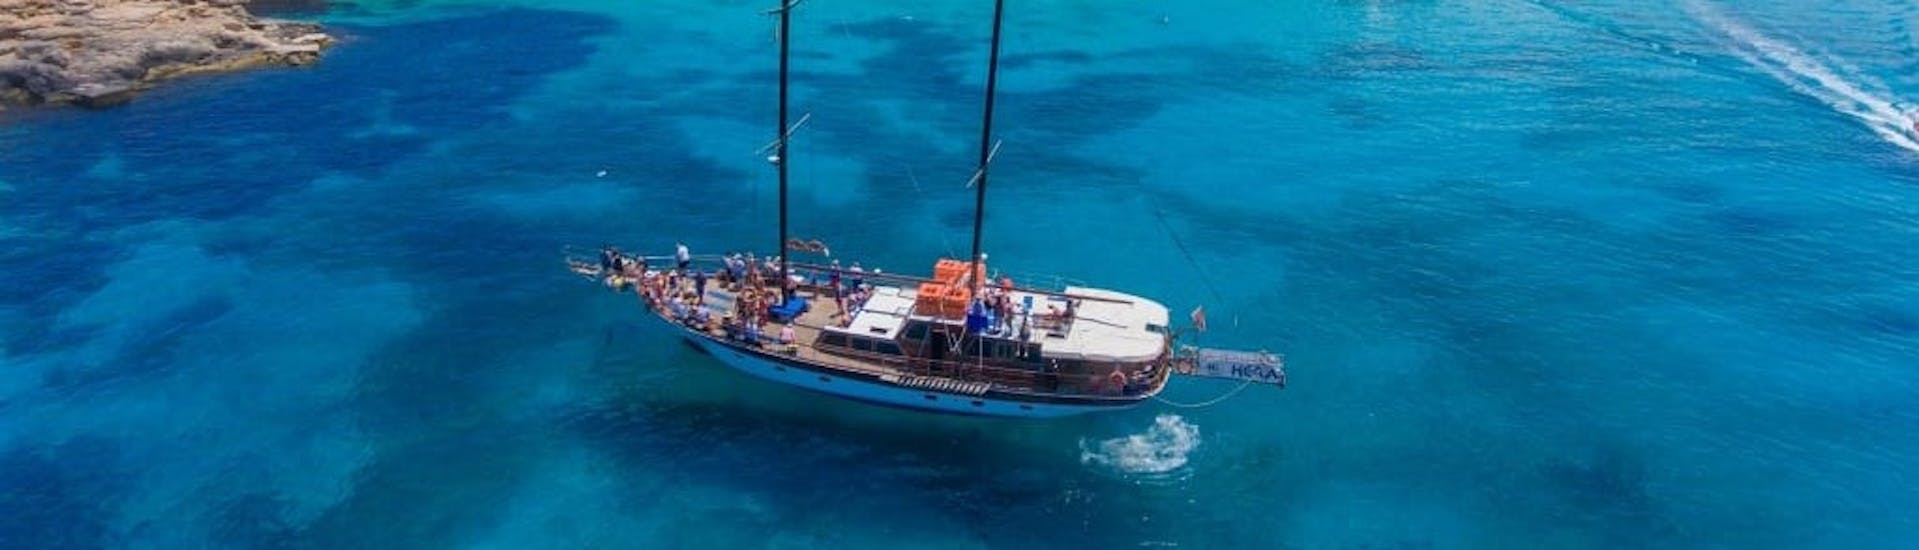 Ganztages Gulet Bootstour zur Insel Comino und der Blauen Lagune von Sliema.